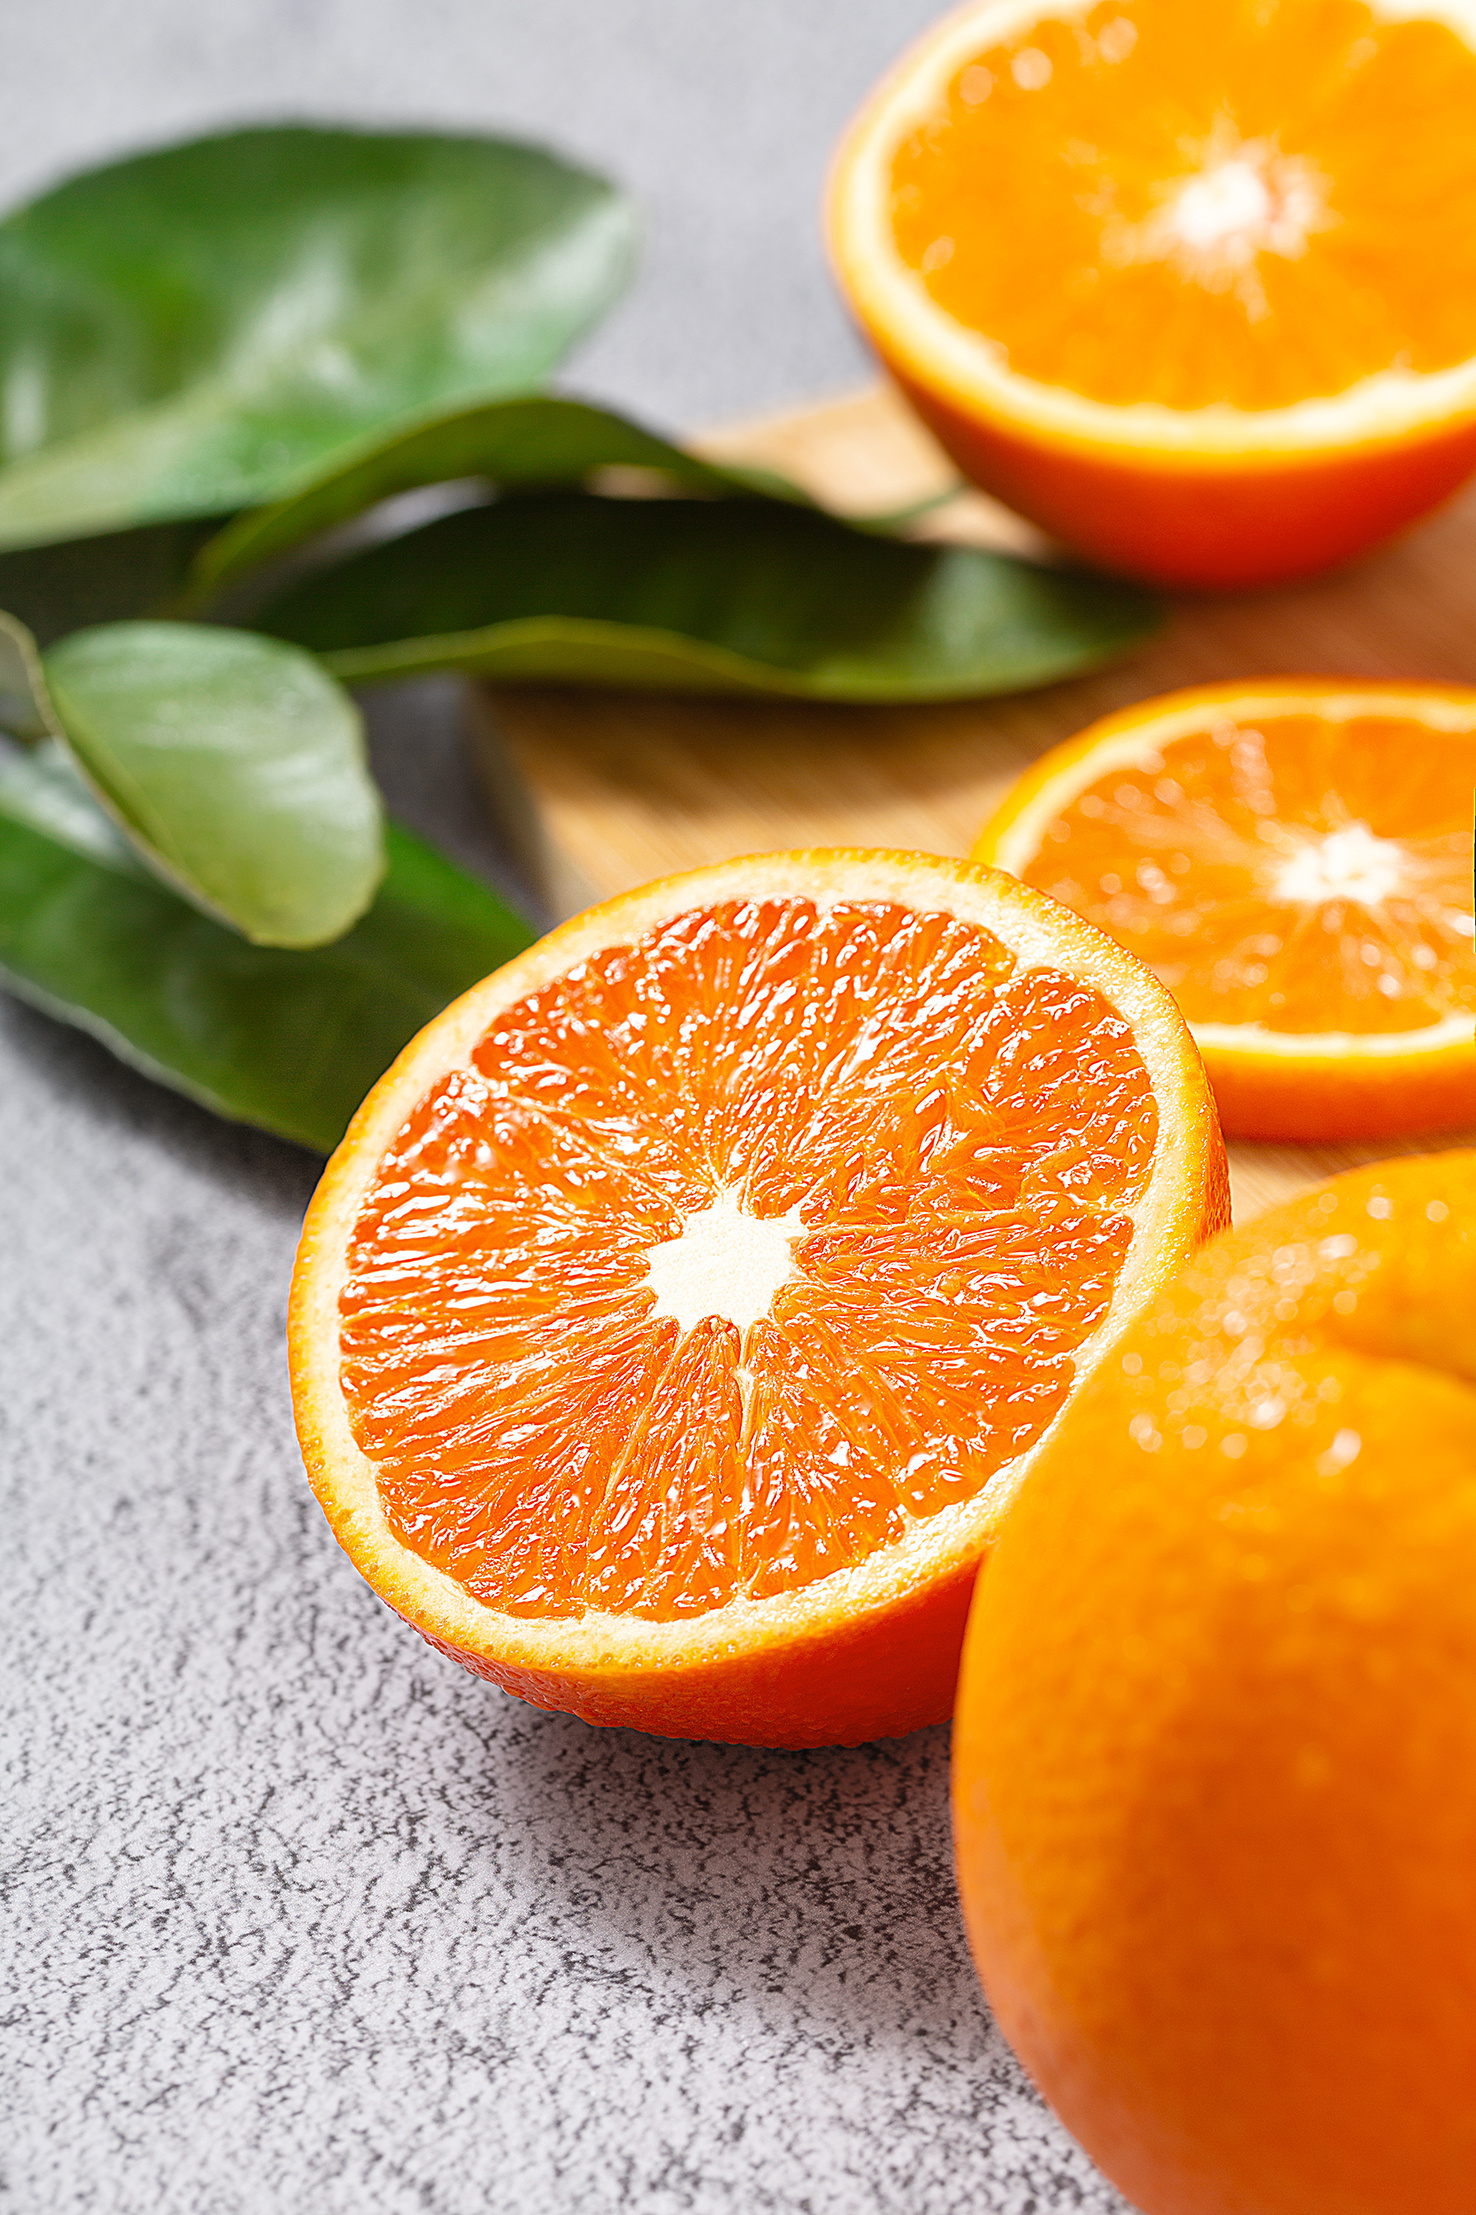 苹果 橙子 水果 - Pixabay上的免费照片 - Pixabay